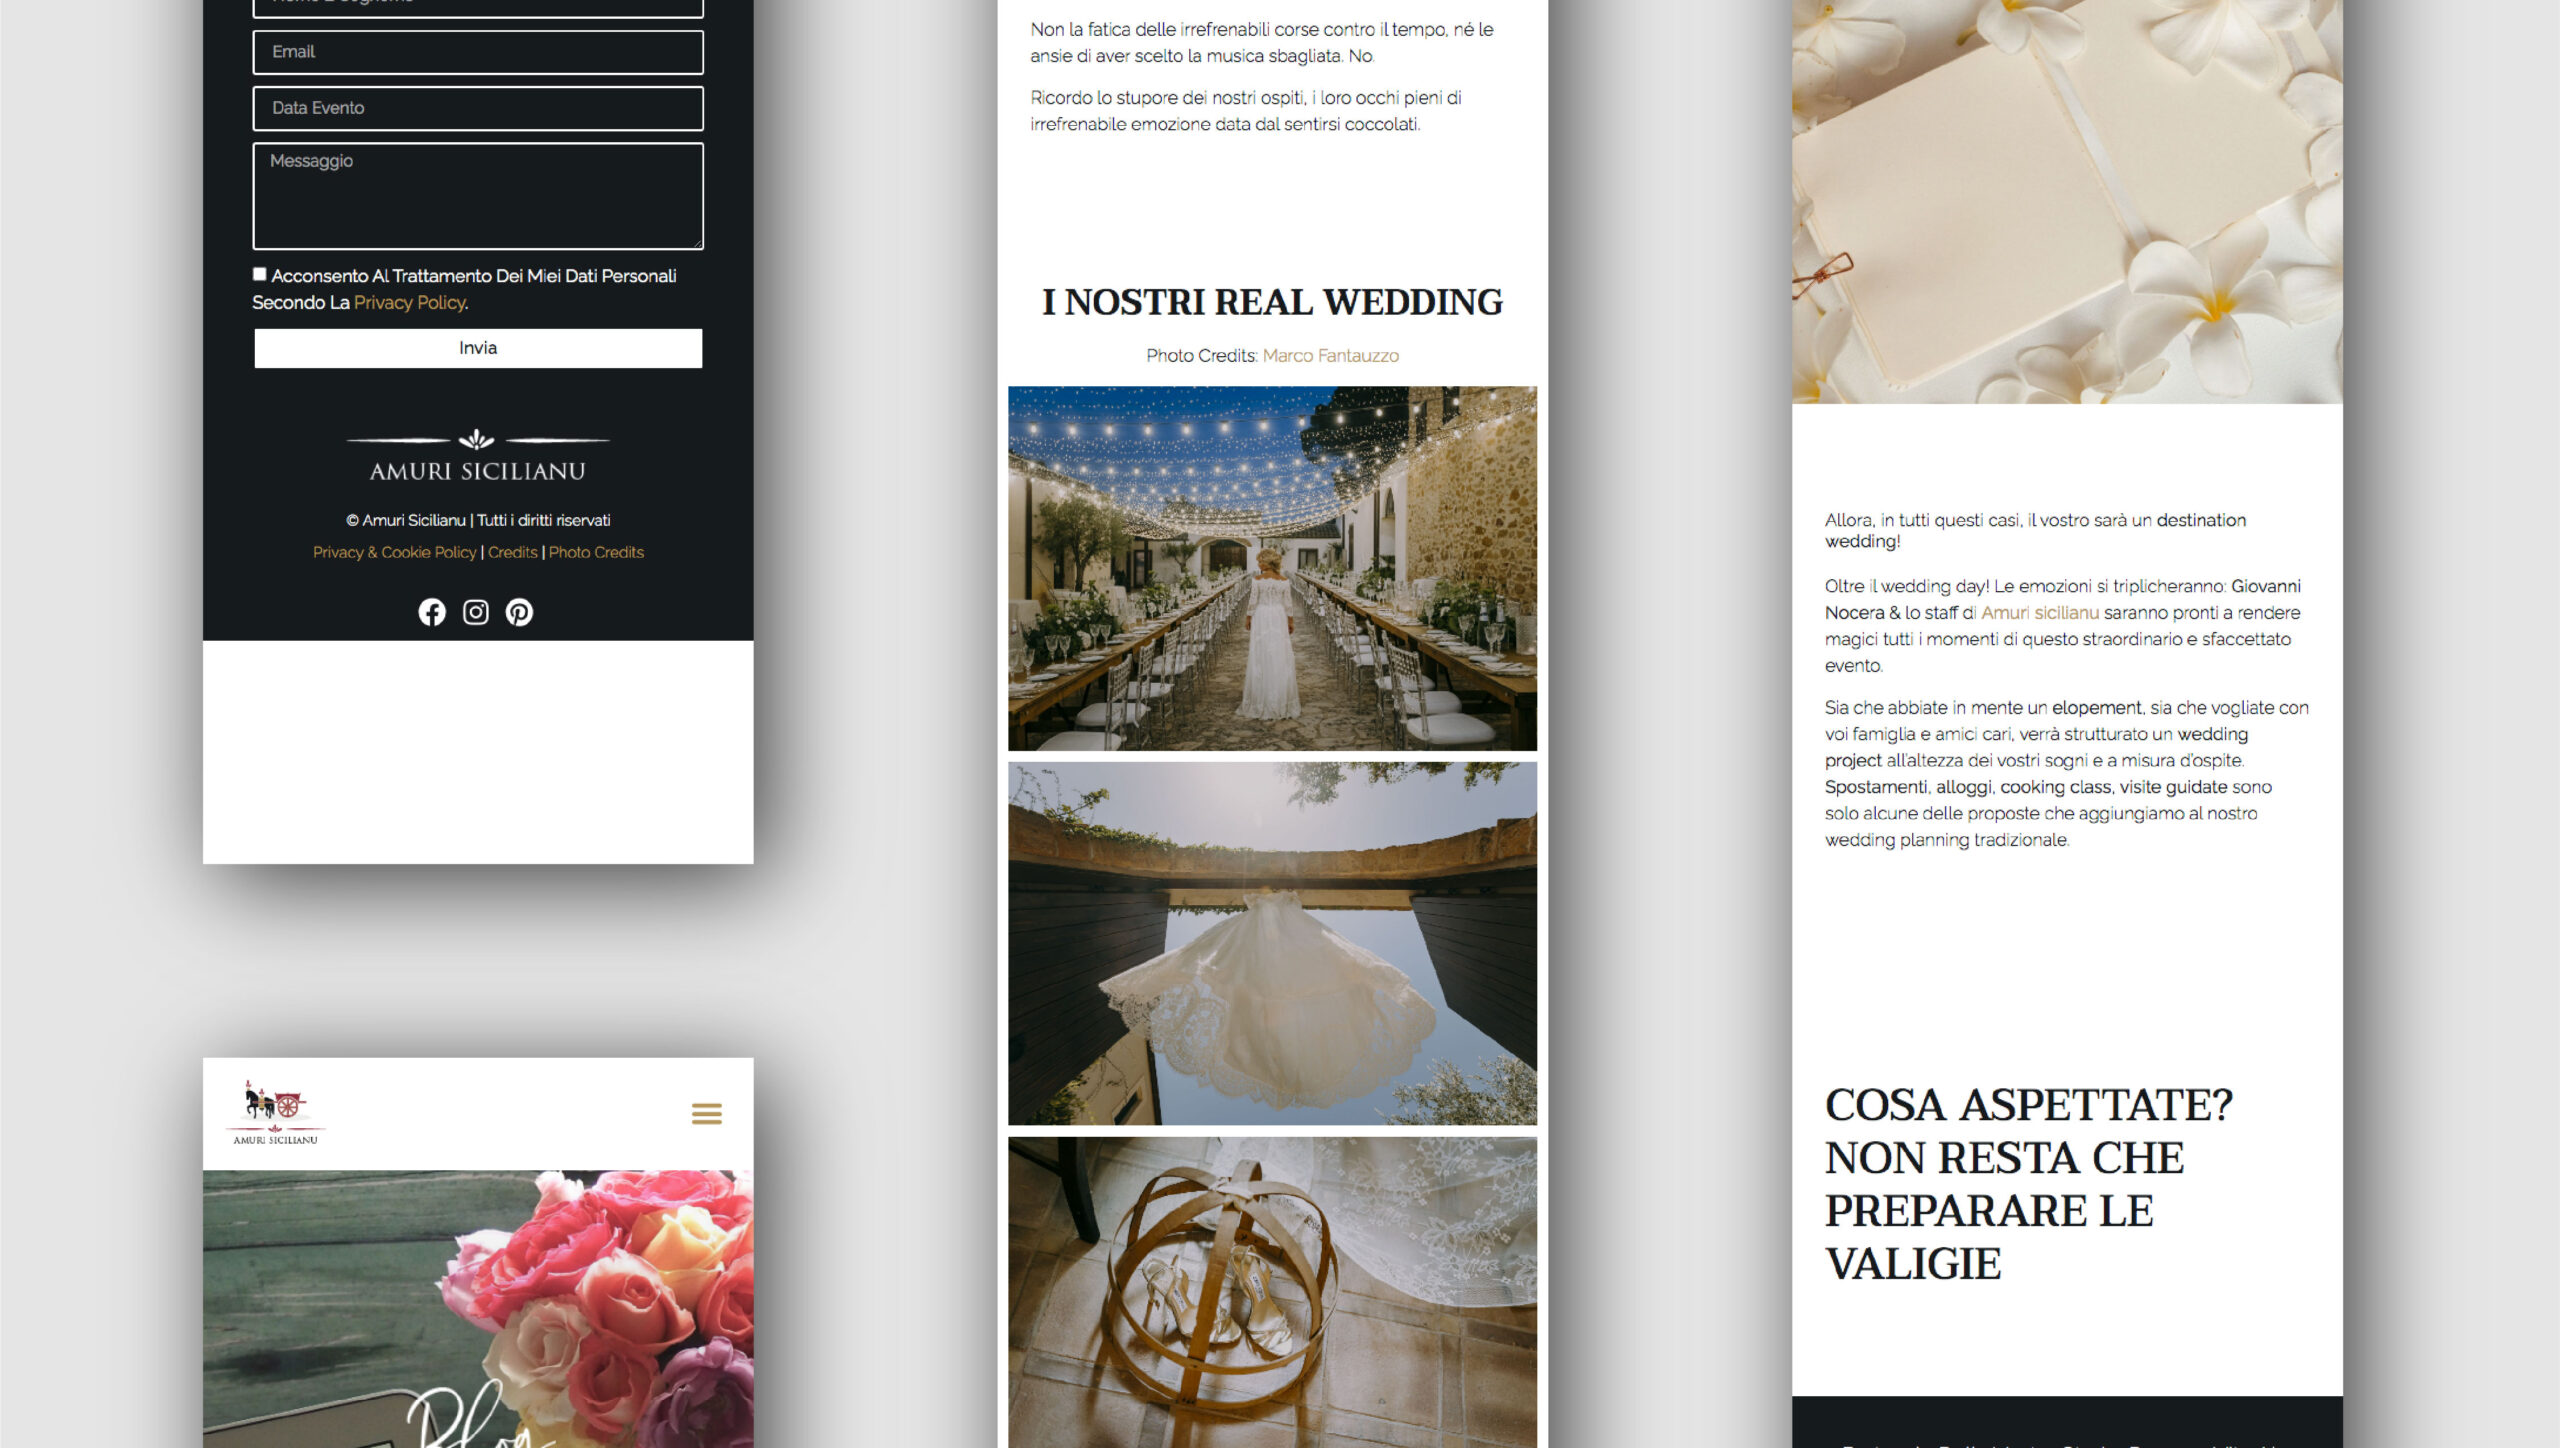 simone staffieri web graphic design - amuri sicilianu website design